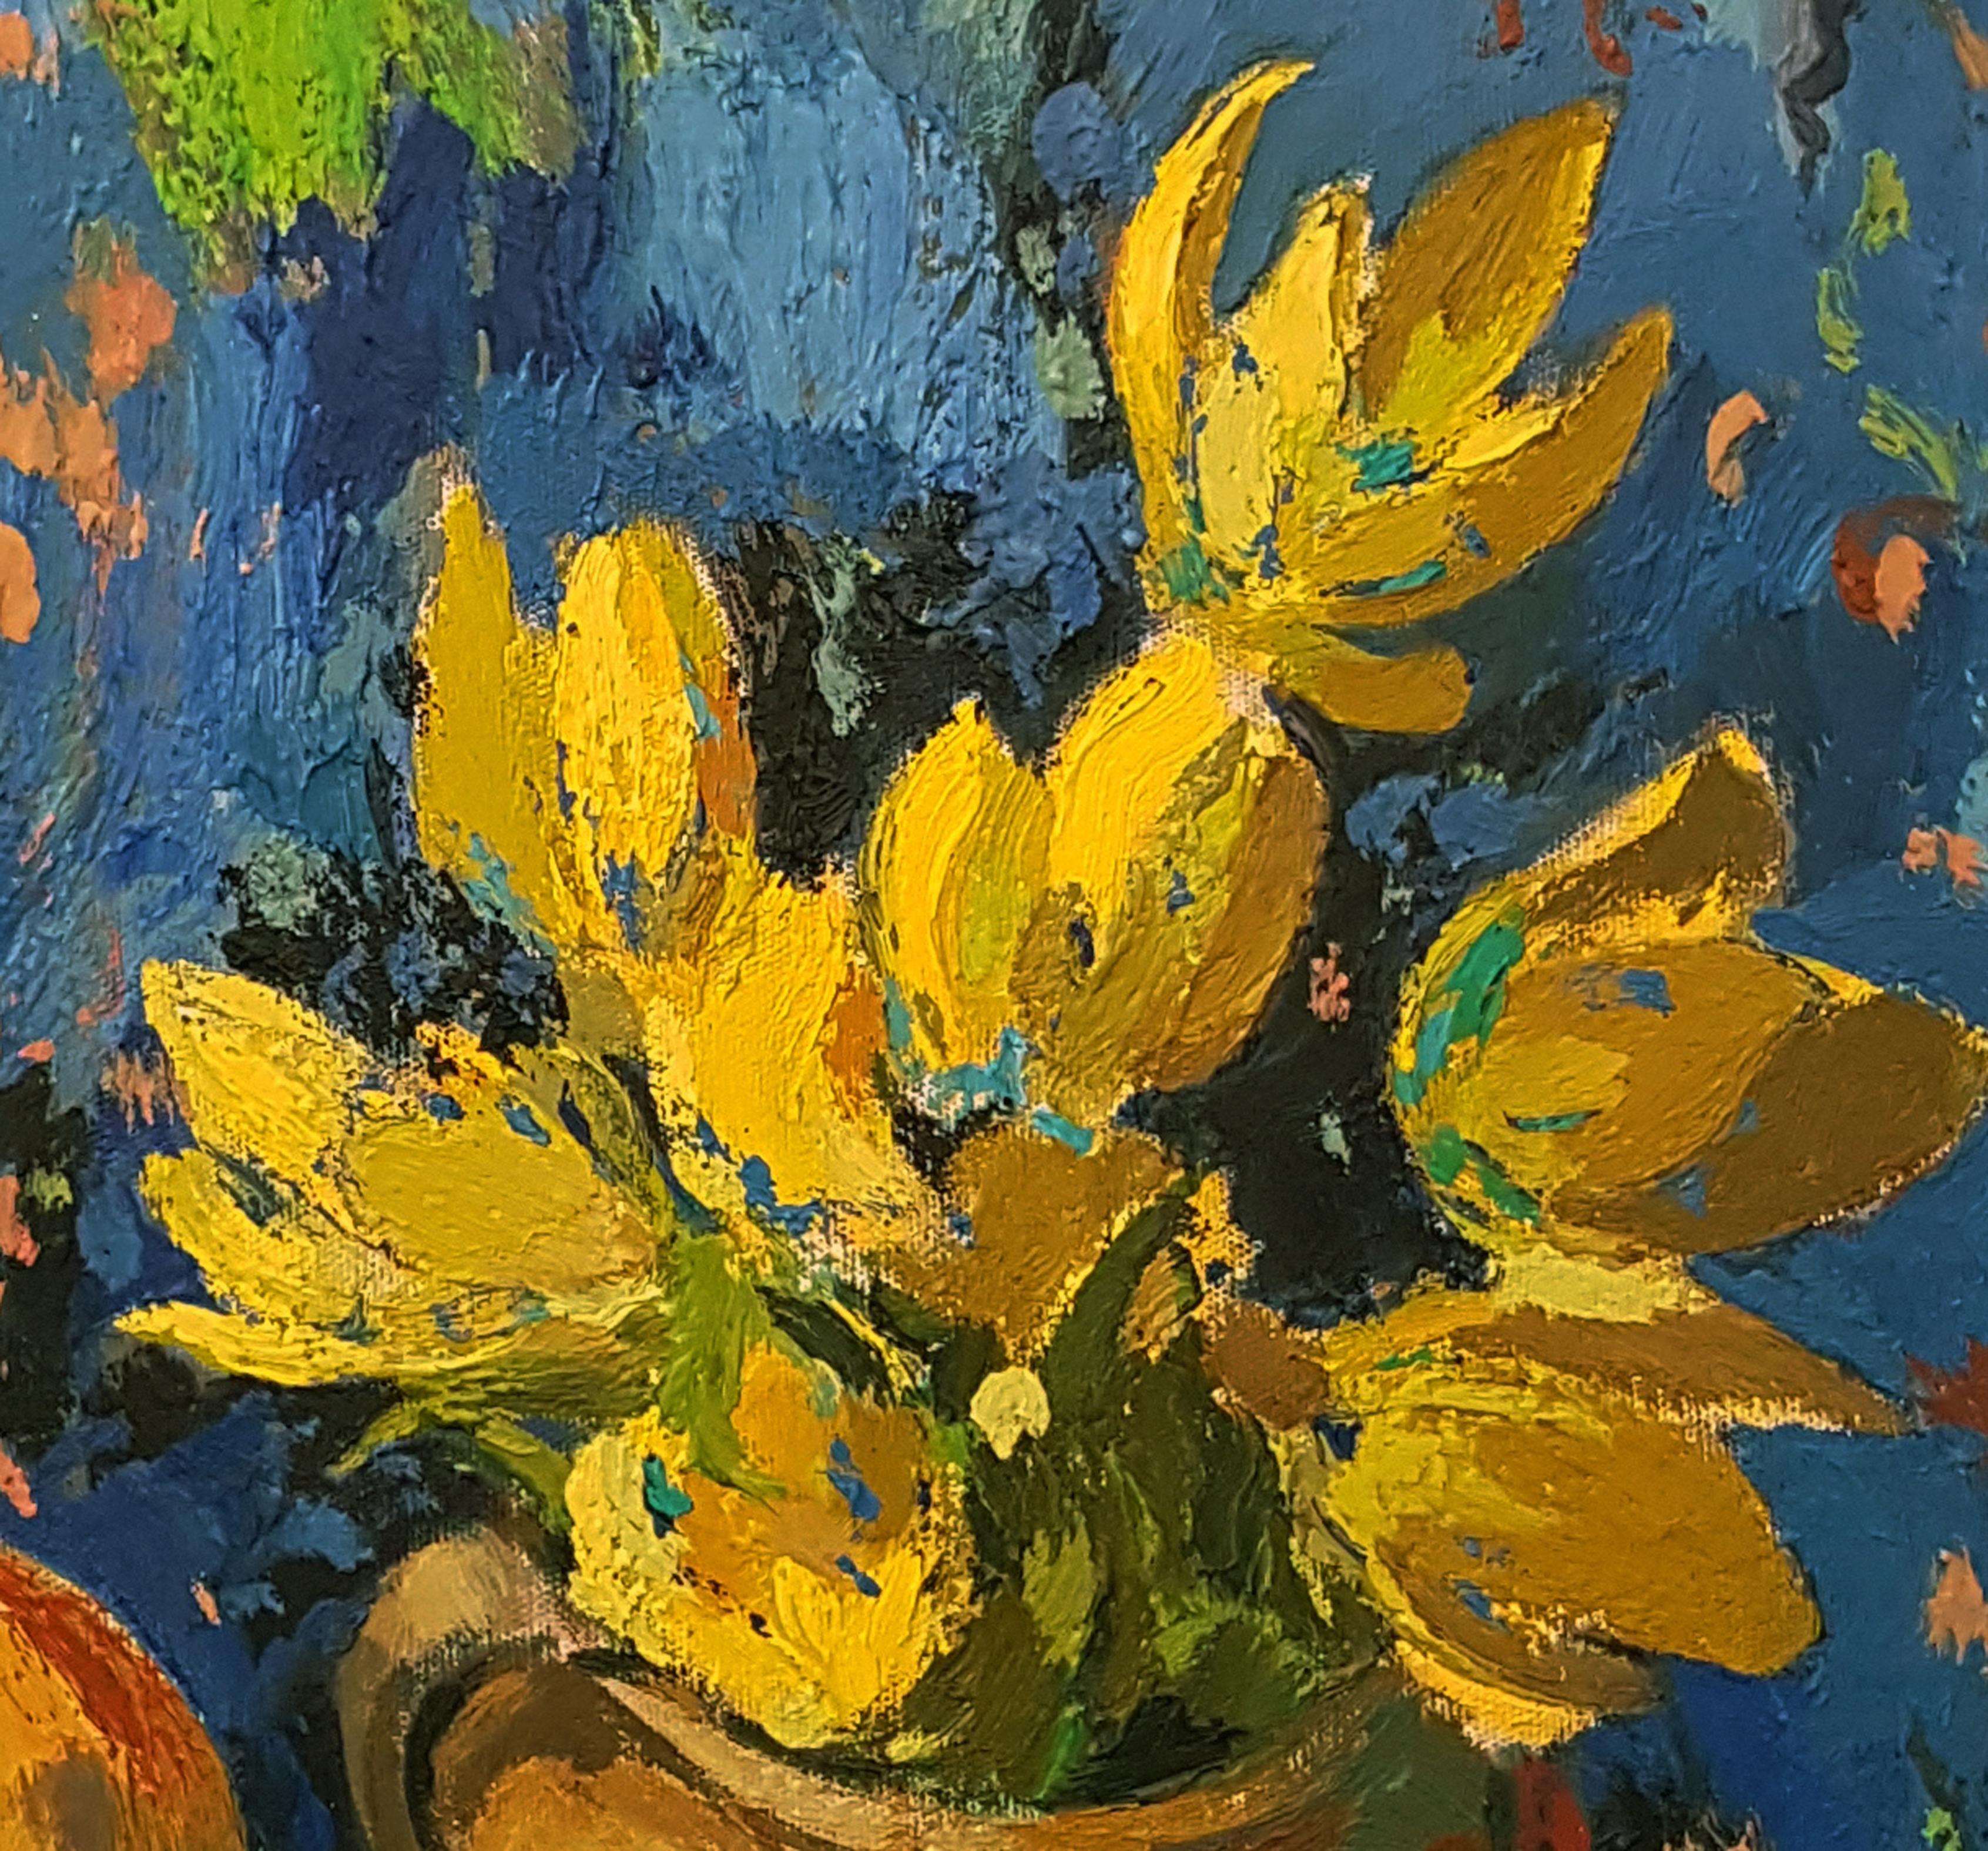 Nature morte en bleu et jaune, peinture à l'huile originale, unique en son genre - Académique Painting par Ara H. Hakobyan